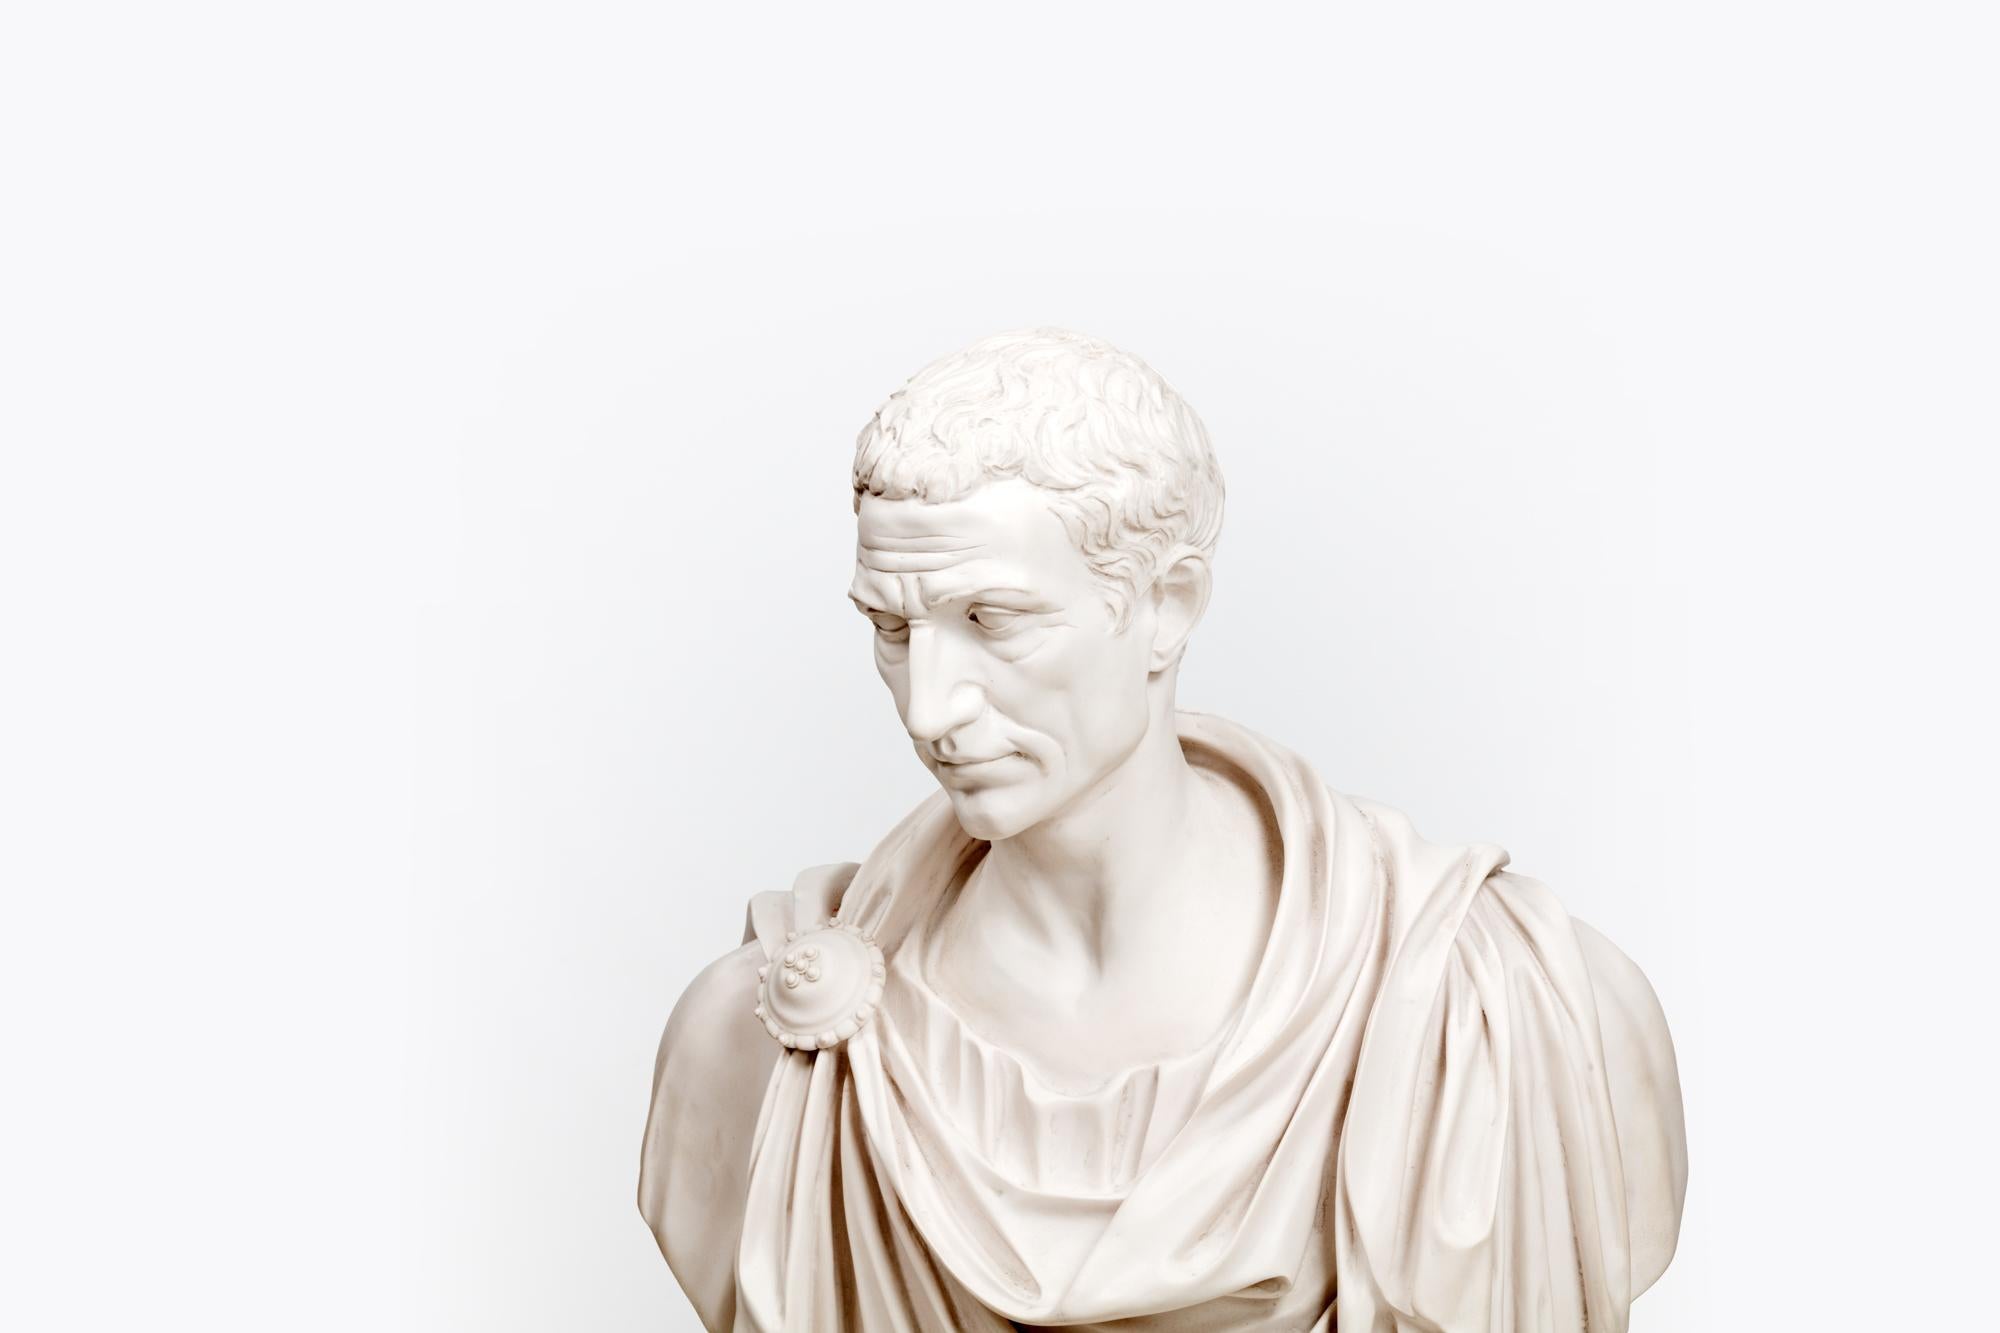 Buste en céramique de Paros du XIXe siècle représentant l'empereur romain Jules César, vêtu d'une toge drapée.

La porcelaine de Paros est un type de porcelaine biscuitée qui imite le style du marbre sculpté.

Gaius Julius Caesar était un général et